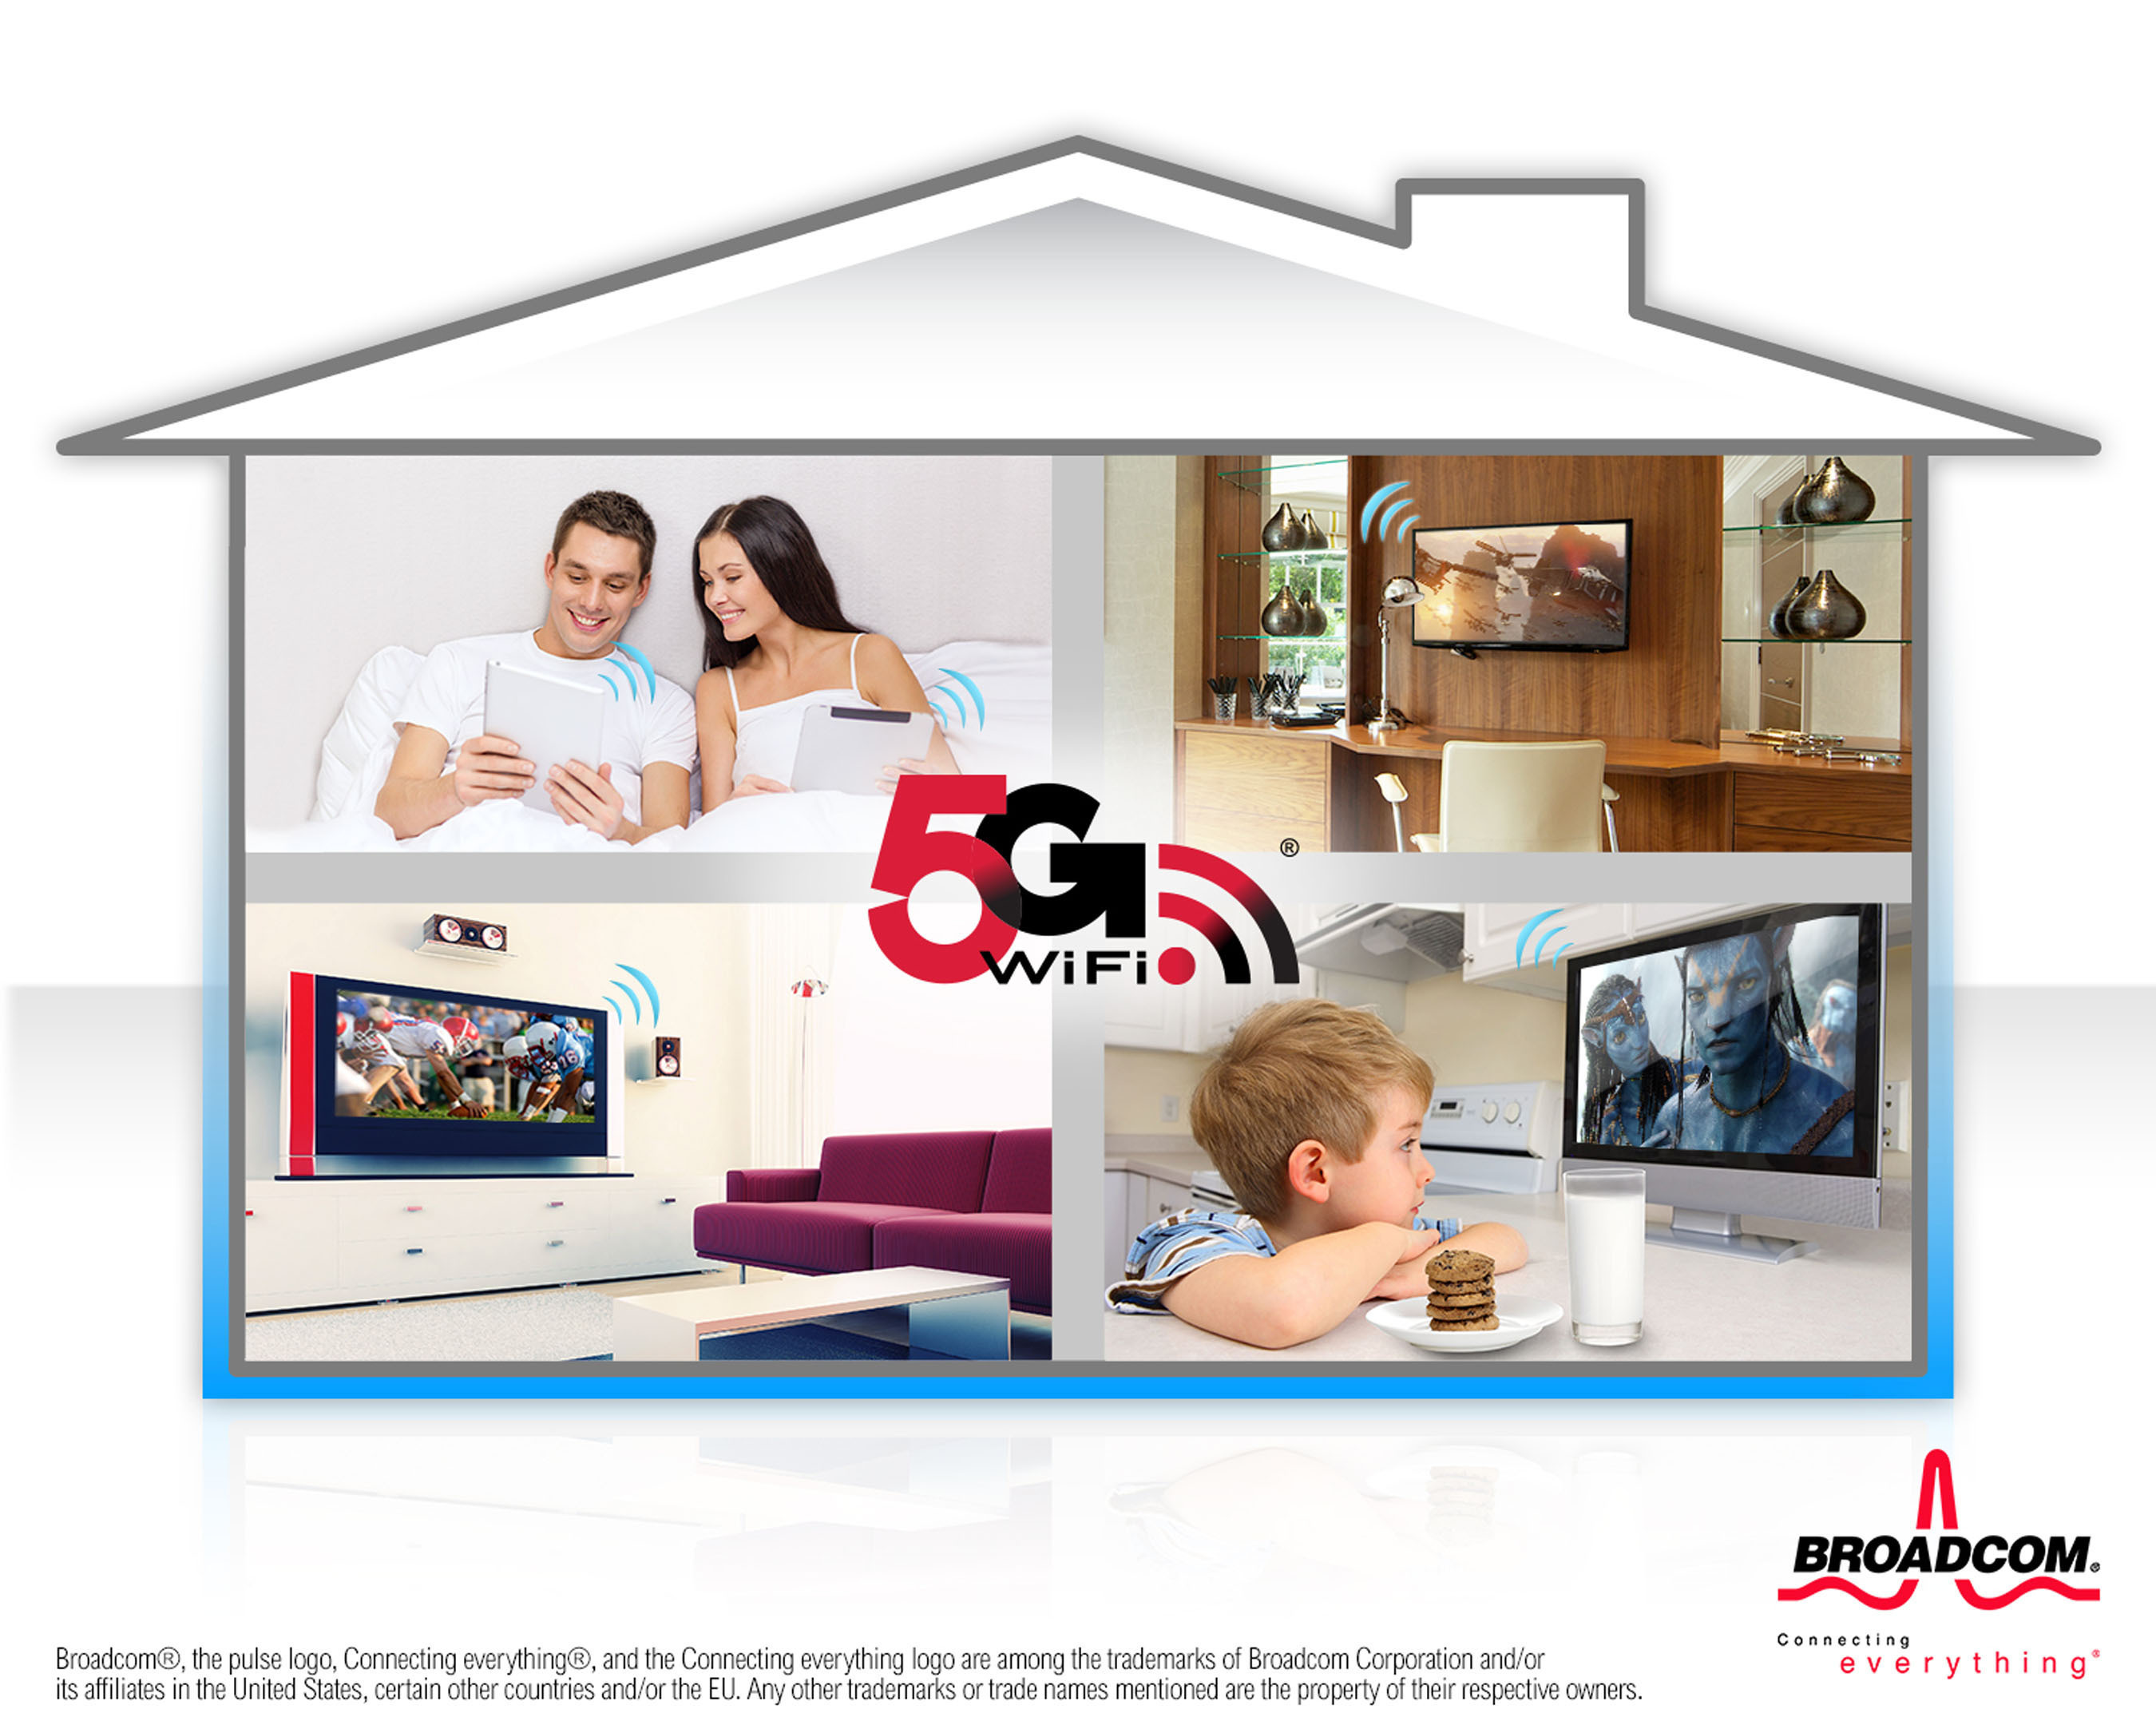 Broadcom's 5G WiFi solutions simplify streaming content throughout the home. (PRNewsFoto/Broadcom Corporation/BRCM Mobile & Wireless) (PRNewsFoto/BROADCOM CORPORATION)